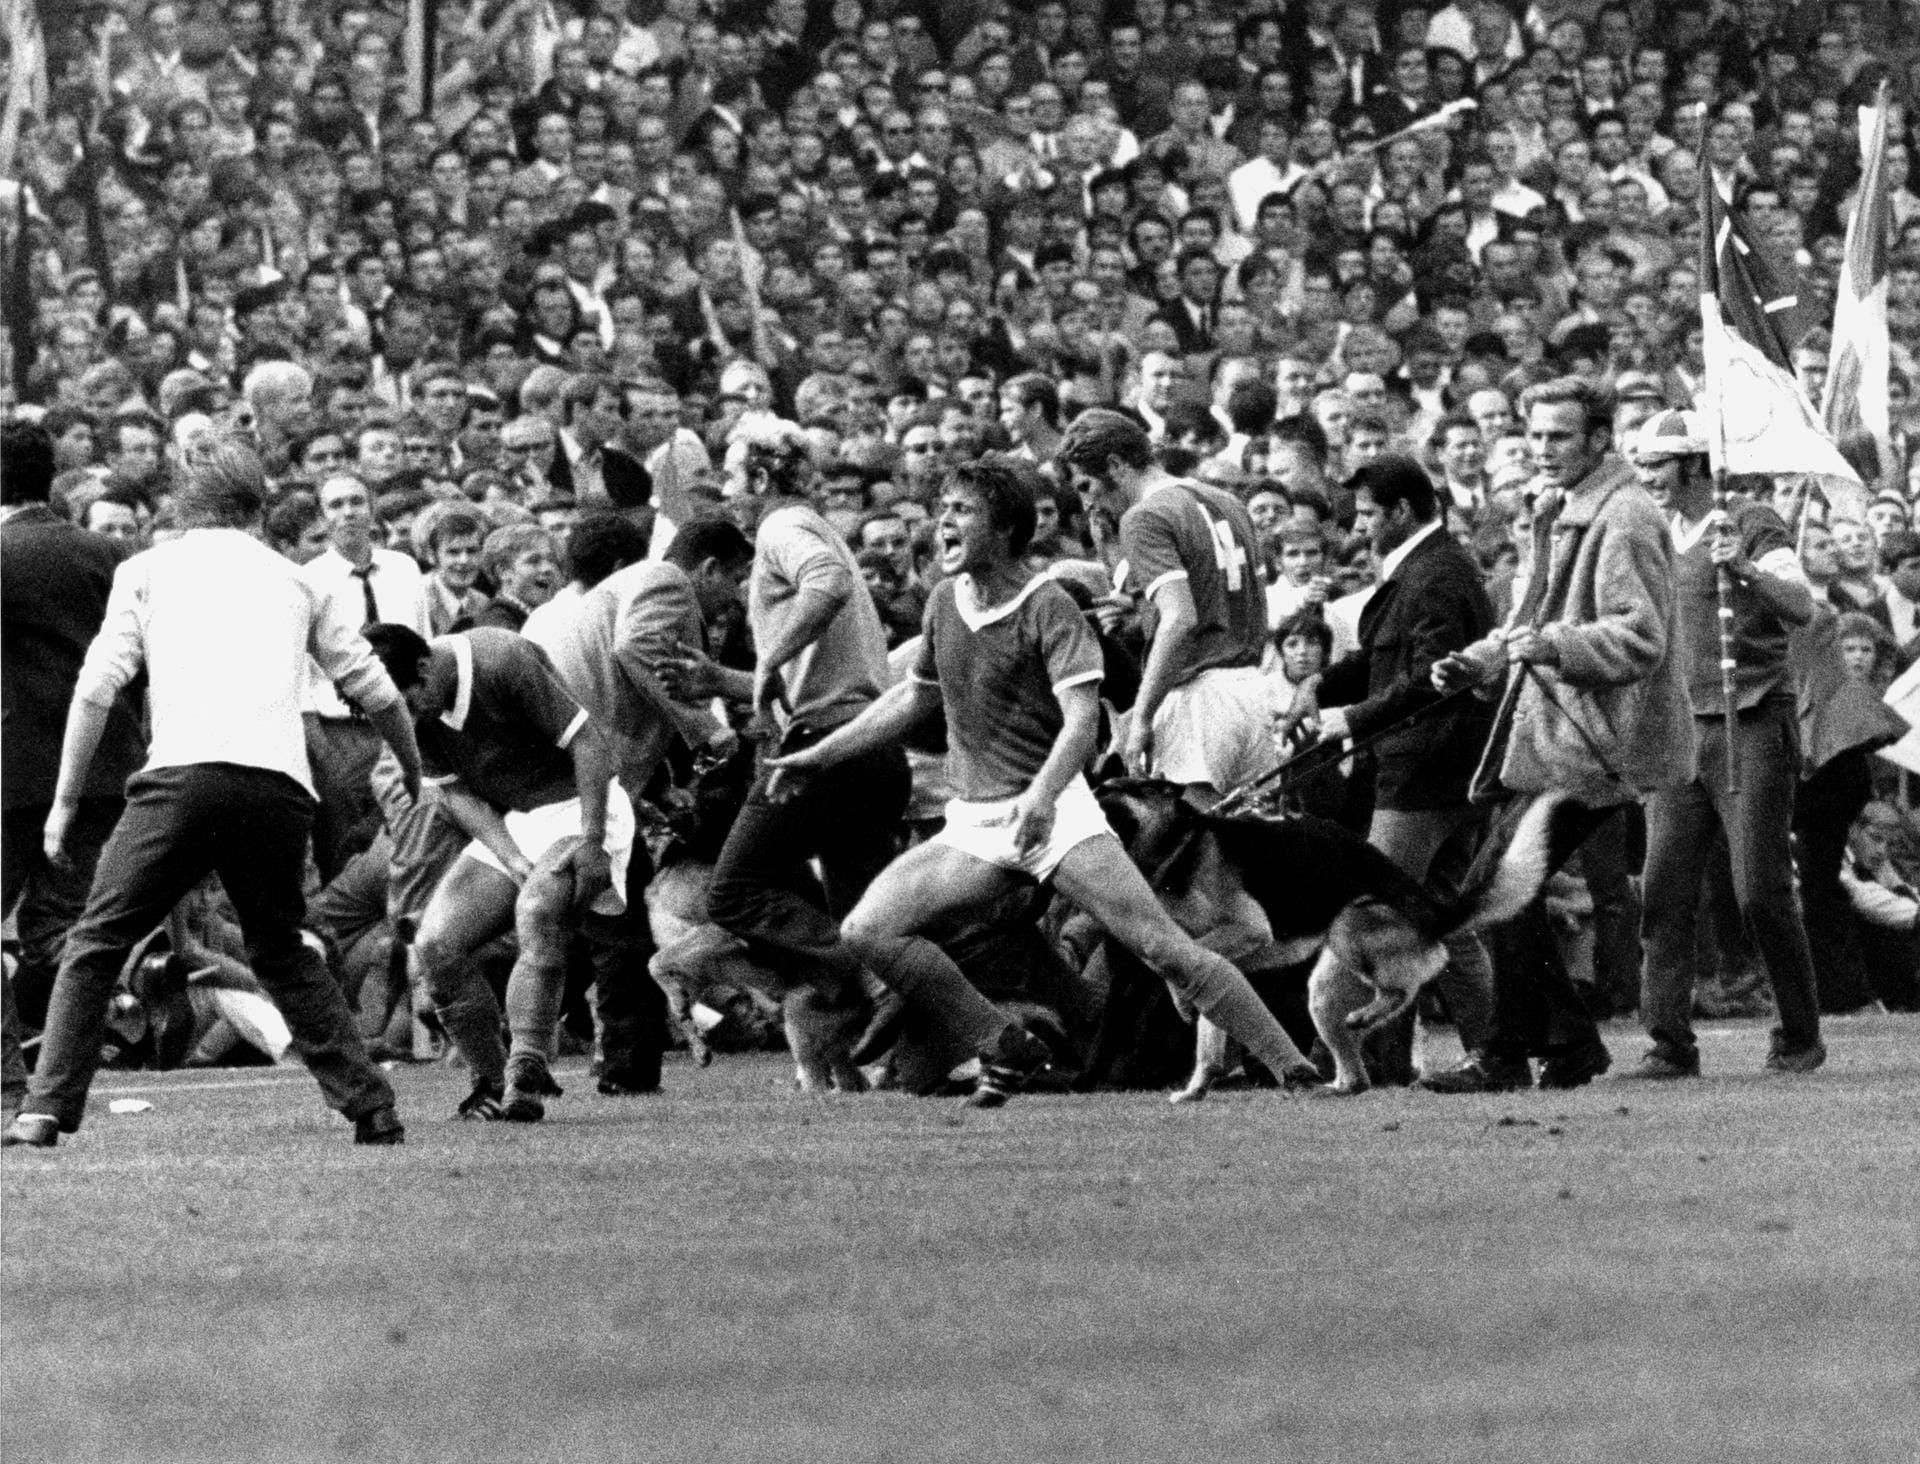 September 1969 das legendäre Derby im Dortmunder Stadion Rote Erde: Schalkes Friedel Rausch wird während des Spiels von einem Schäferhund gebissen. Das Spiel endet 1:1 – für Rausch mit einer Narbe am Po.